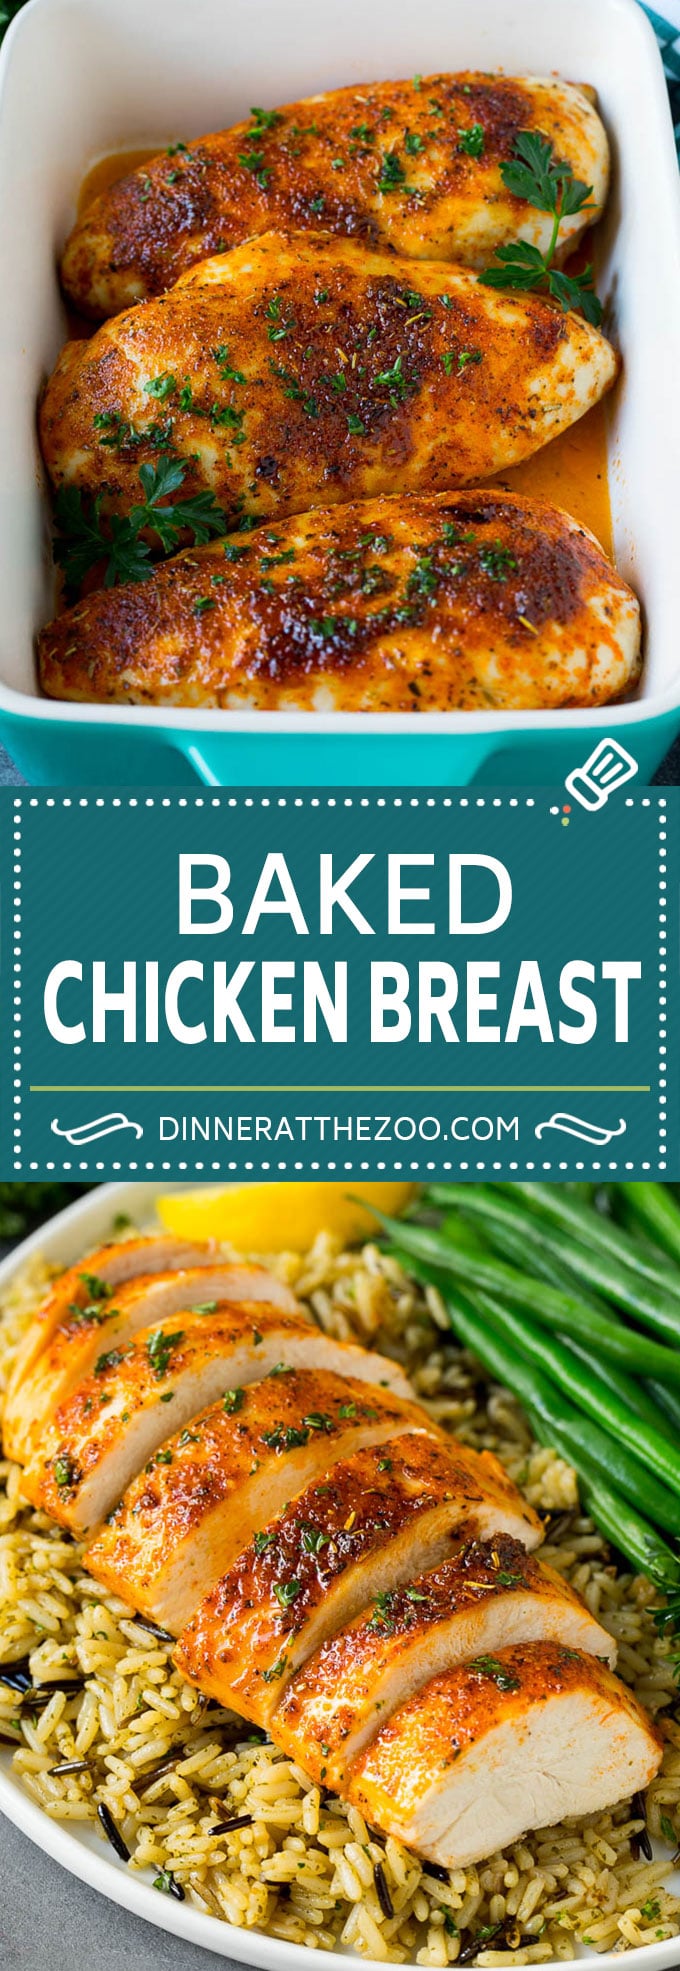 Baked Chicken Breast Recipe #chicken #dinner #dinneratthezoo